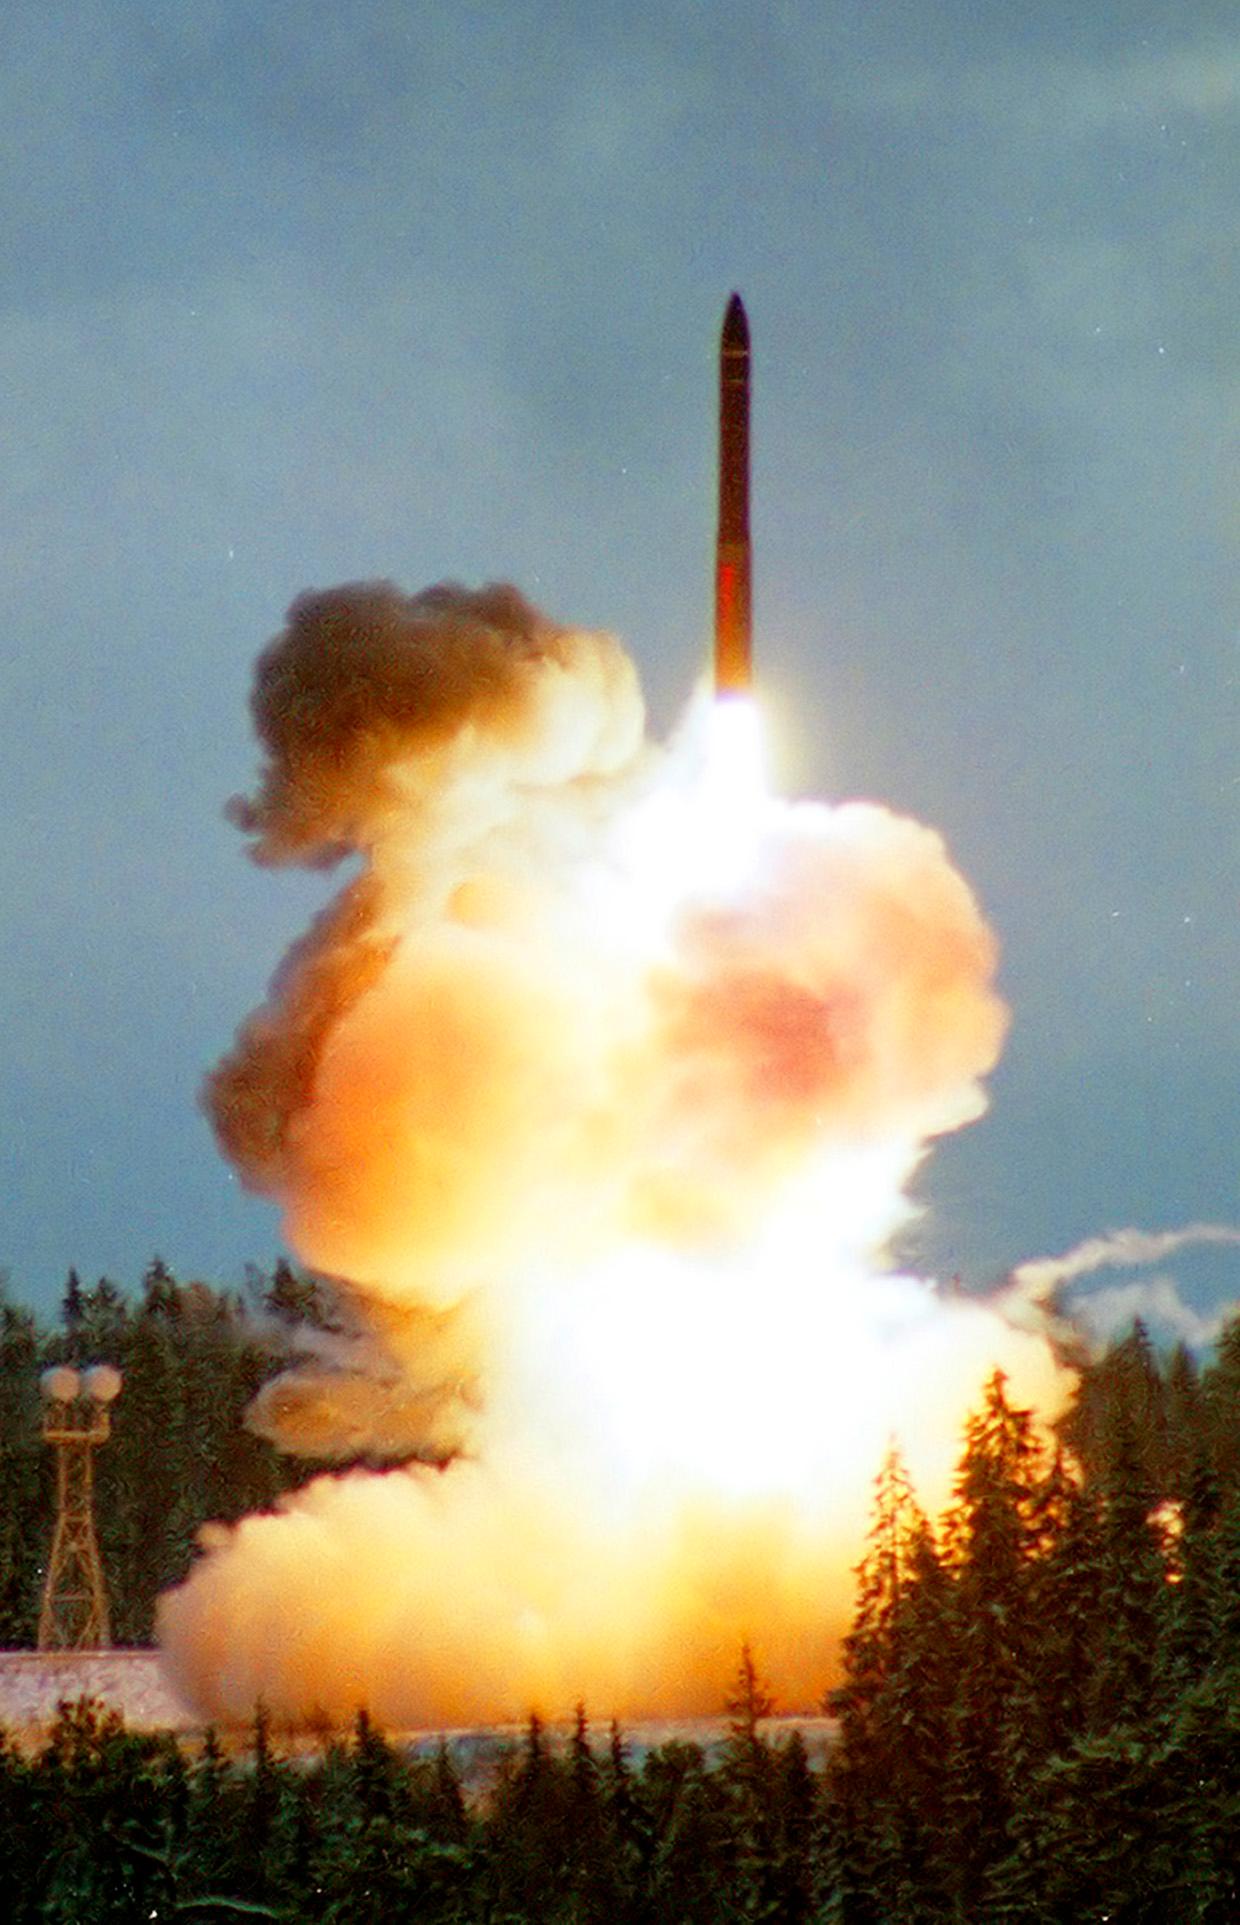 Rysk raketuppskjutning (bilden är tagen i ett annat sammanhang).